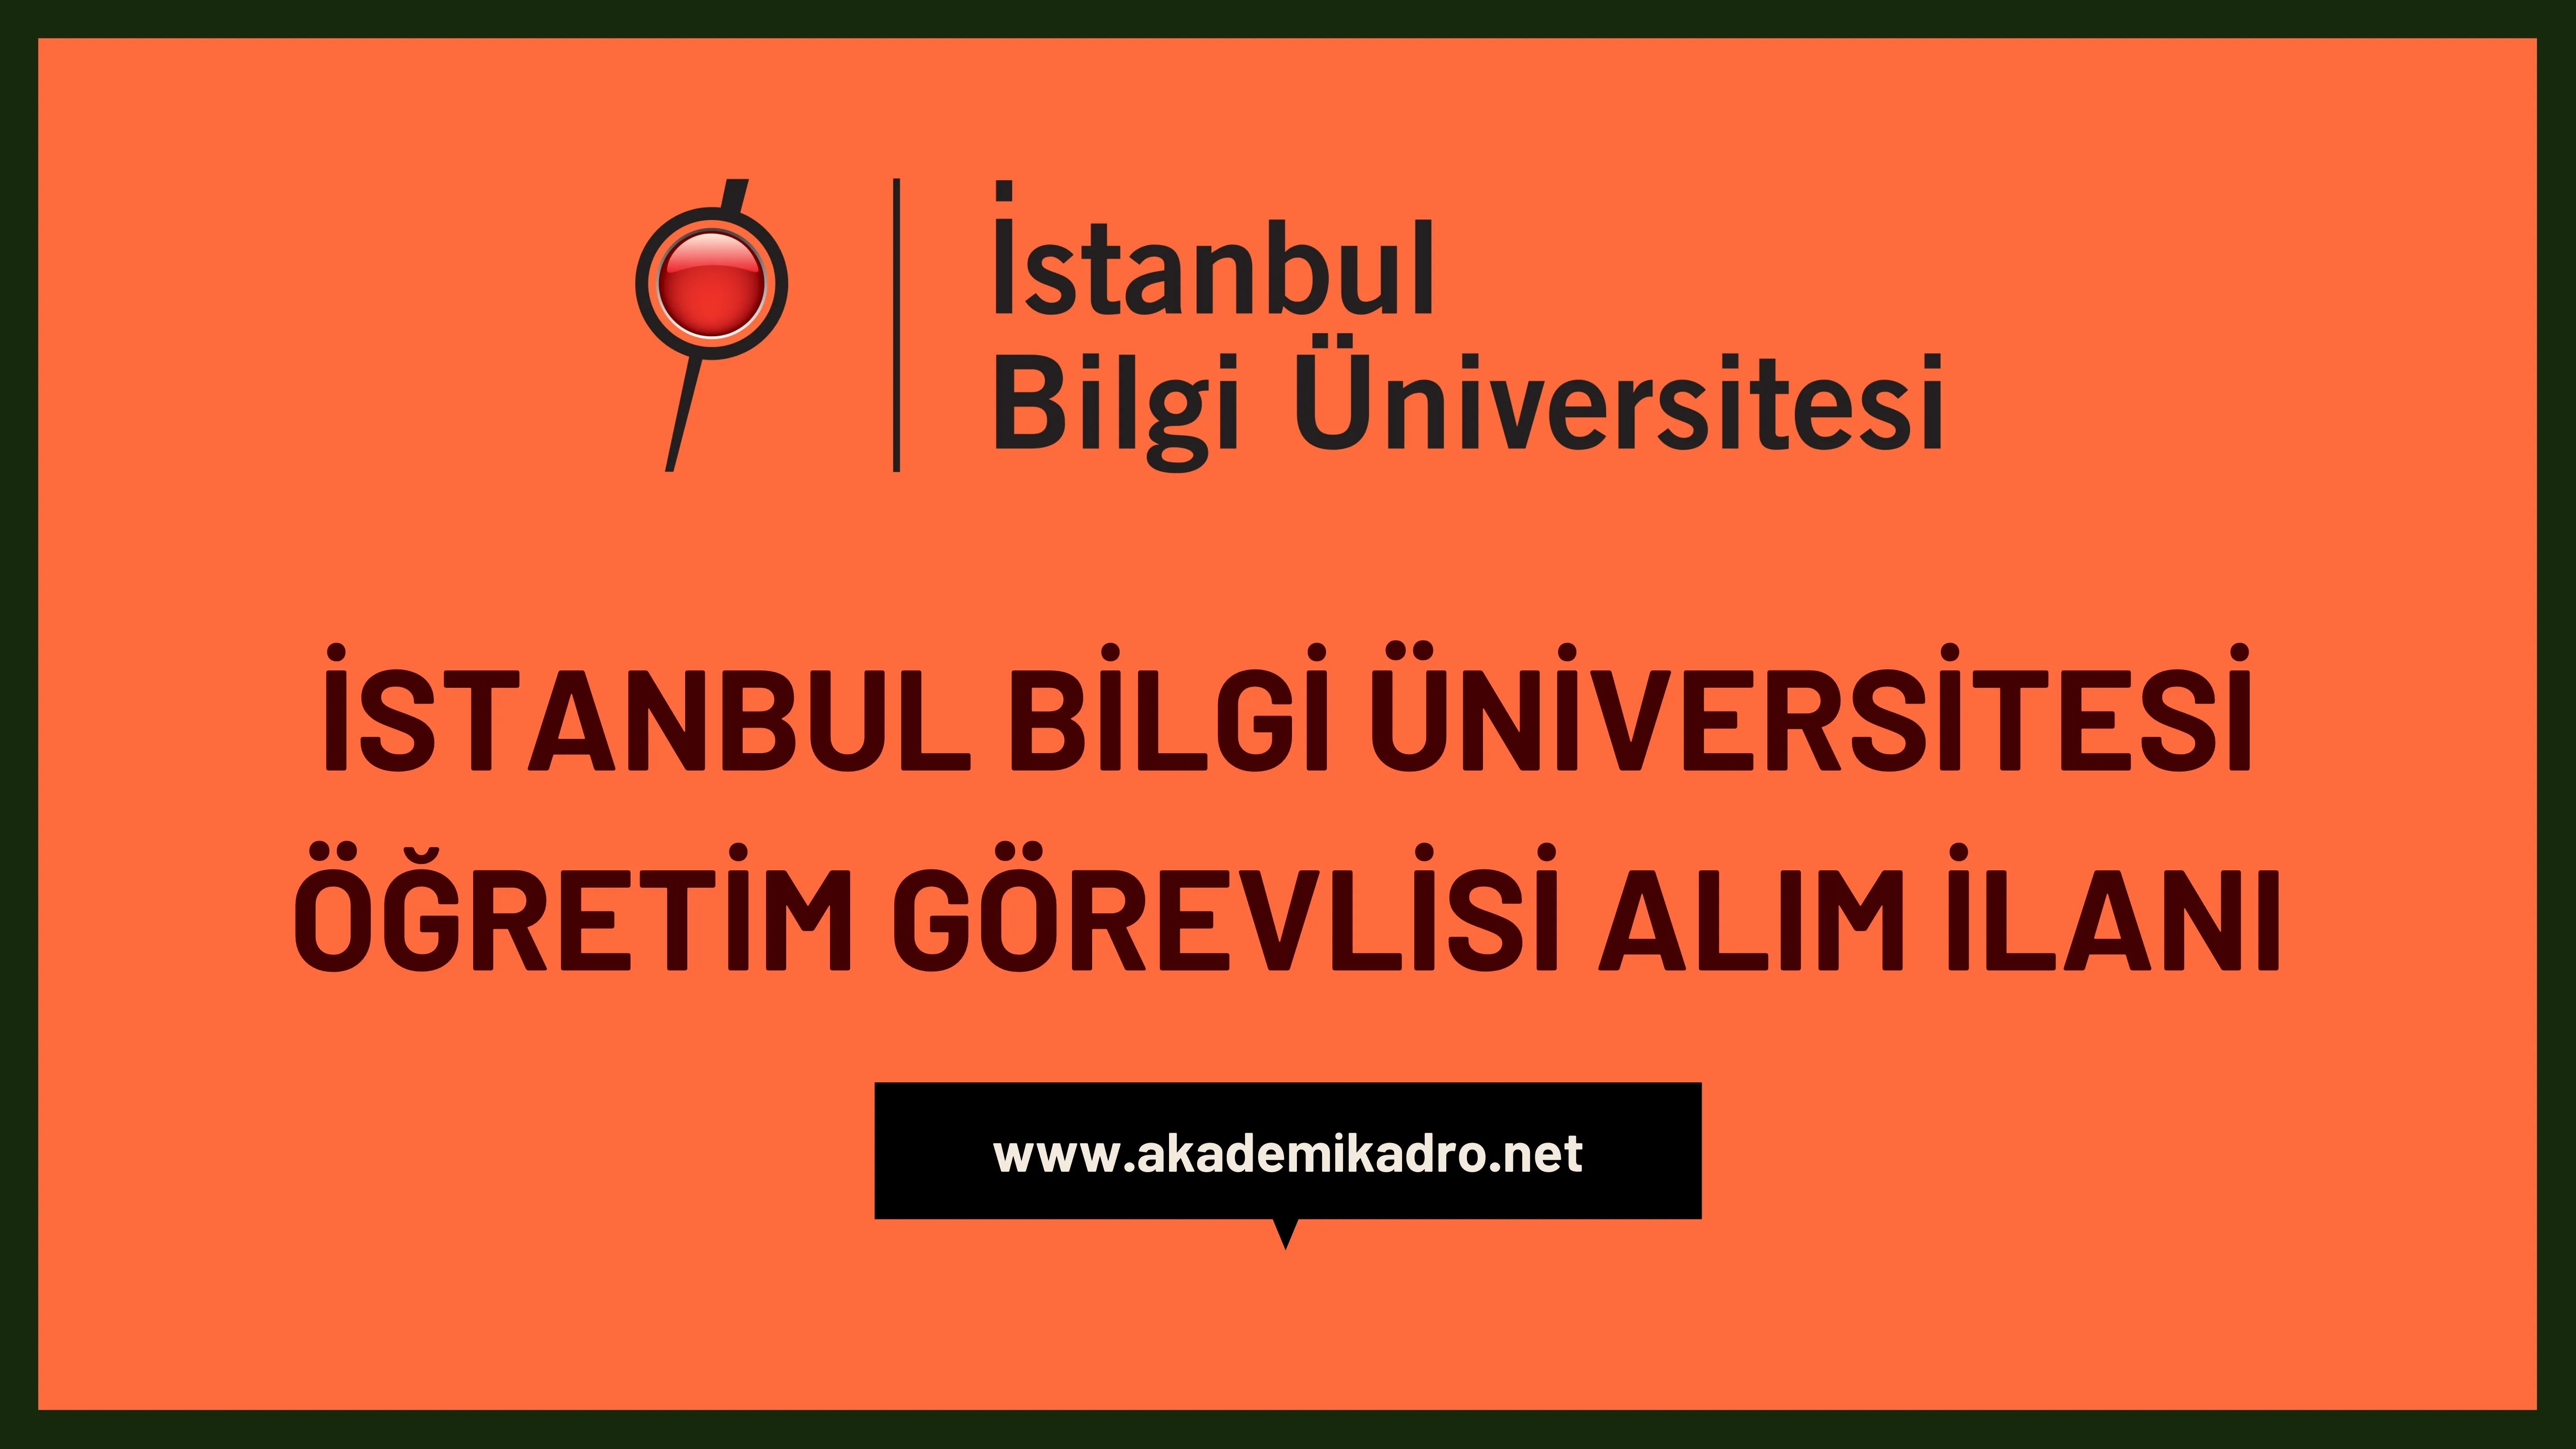 İstanbul Bilgi Üniversitesi 15 Öğretim görevlisi alacak. Son başvuru tarihi 10 Temmuz 2023.